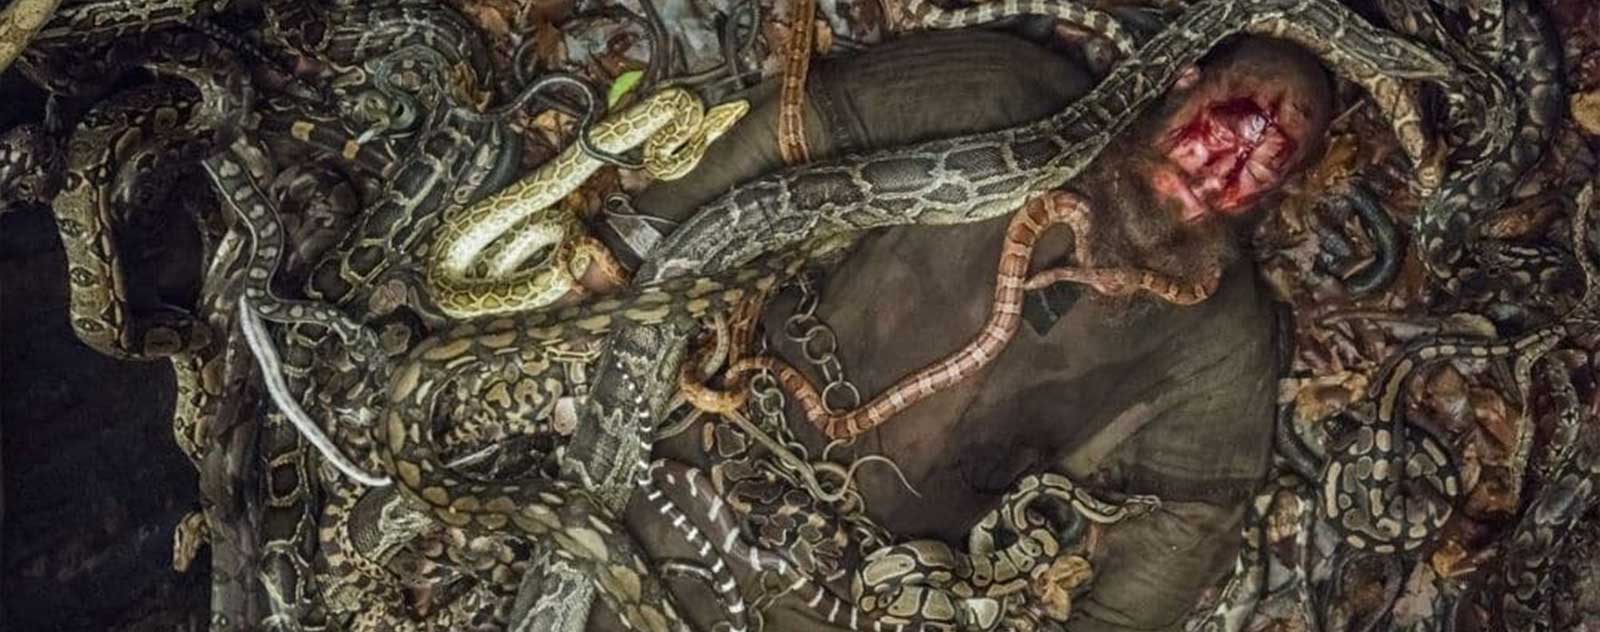 Ragnar dans la fosse aux serpents